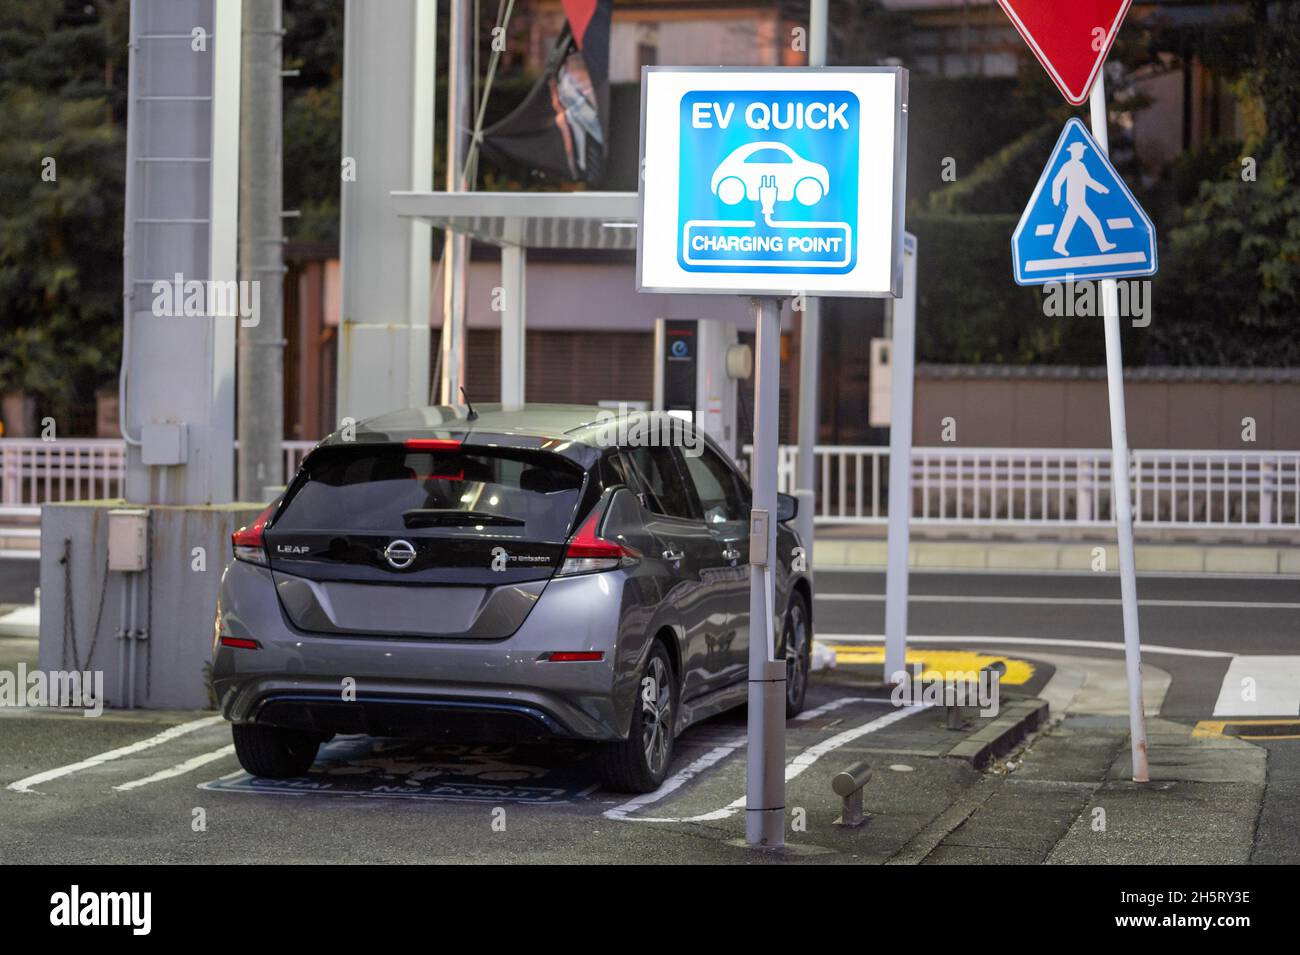 Nissan Leaf se está cargando en el punto de carga rápida para vehículos eléctricos. Señal de luz azul Foto de stock